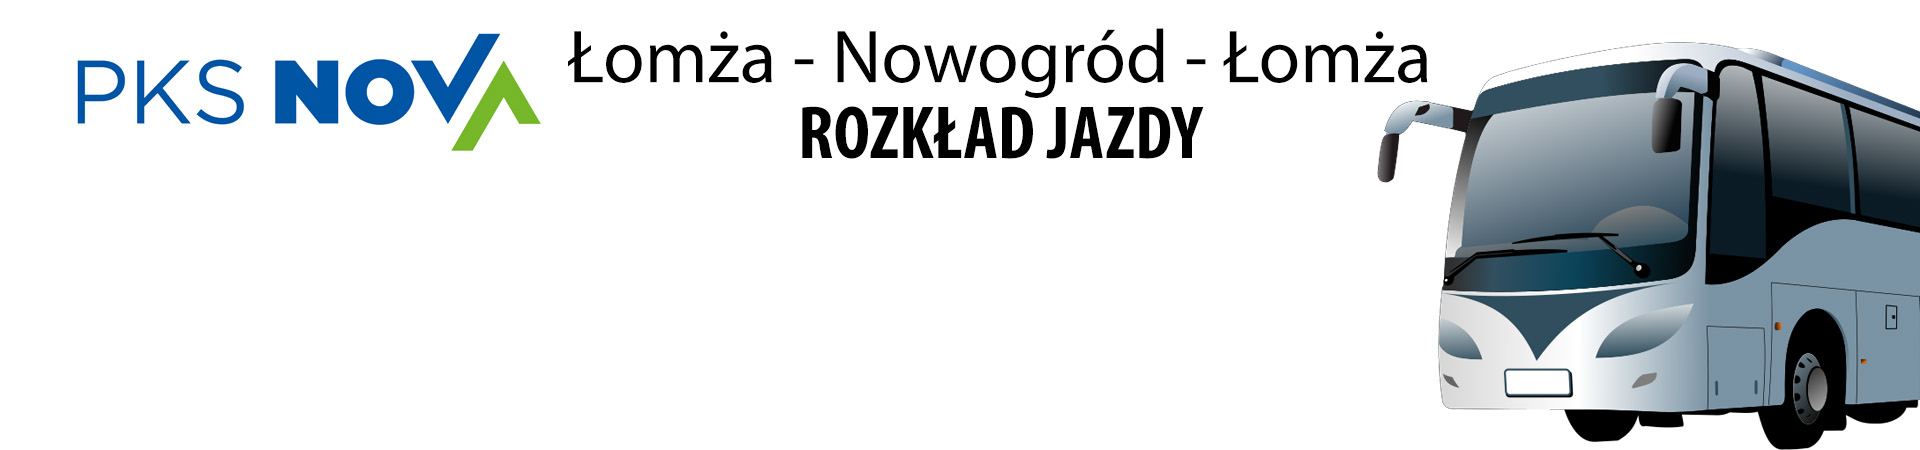 PKS-em na trasie Łomża - Nowogród - Łomża